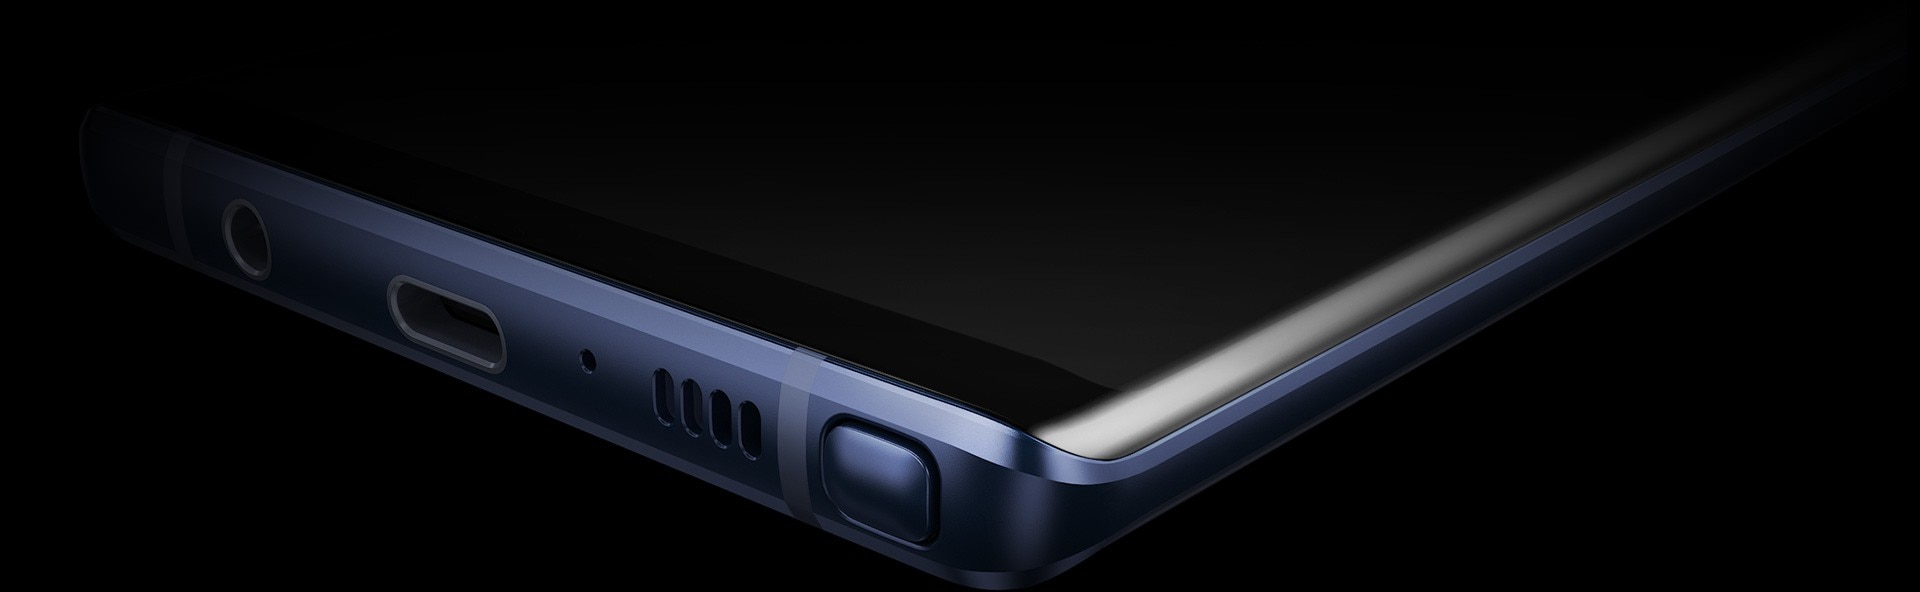 Extrem närbild av Galaxy Note9 från nedre högra sidan som visar Infinity Display